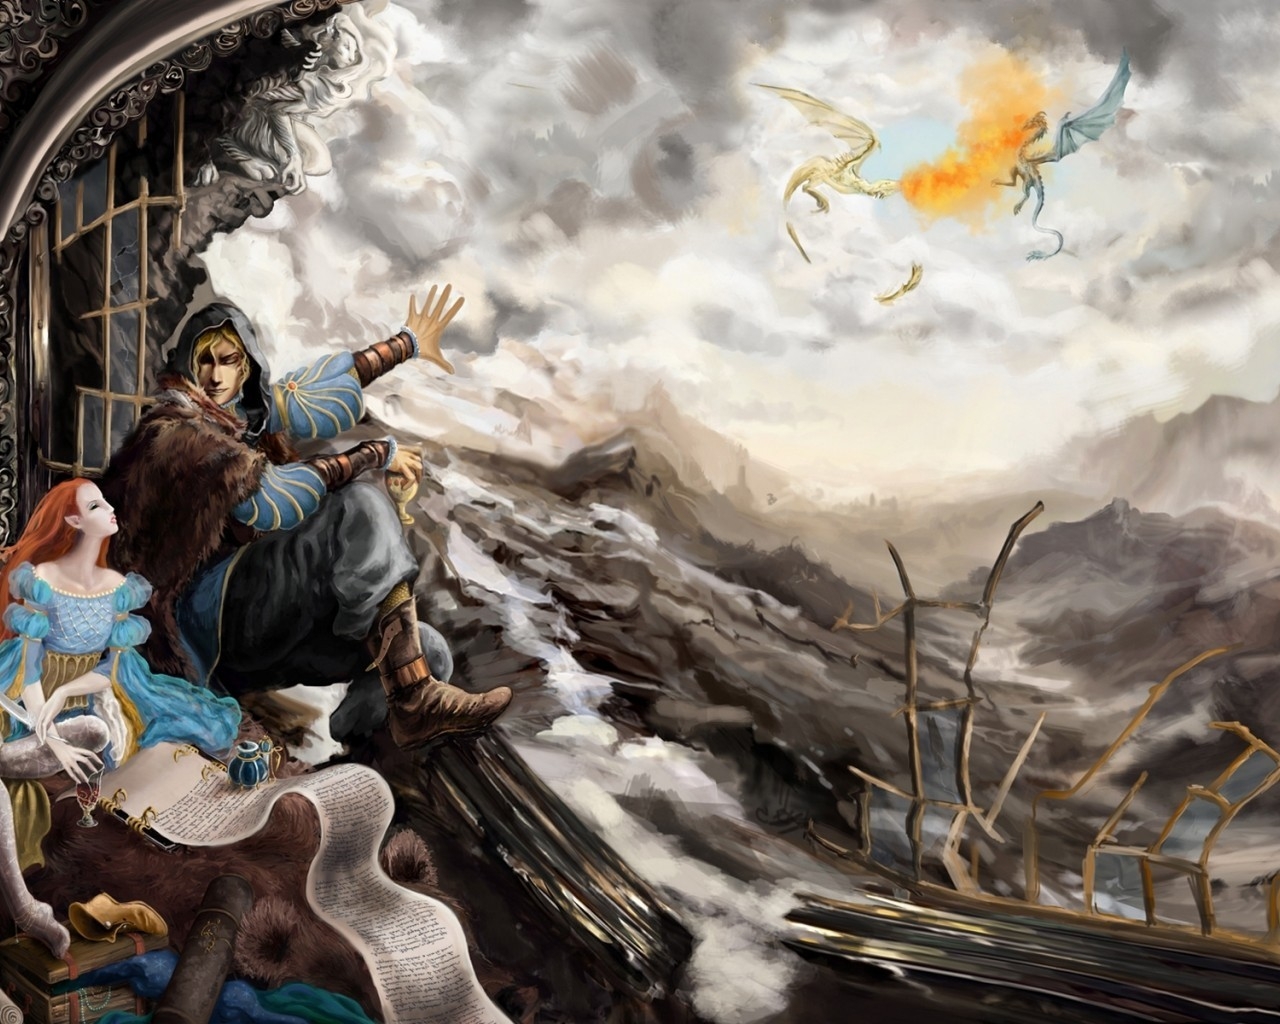 The Elder Scrolls V Skyrim Poster for 1280 x 1024 resolution